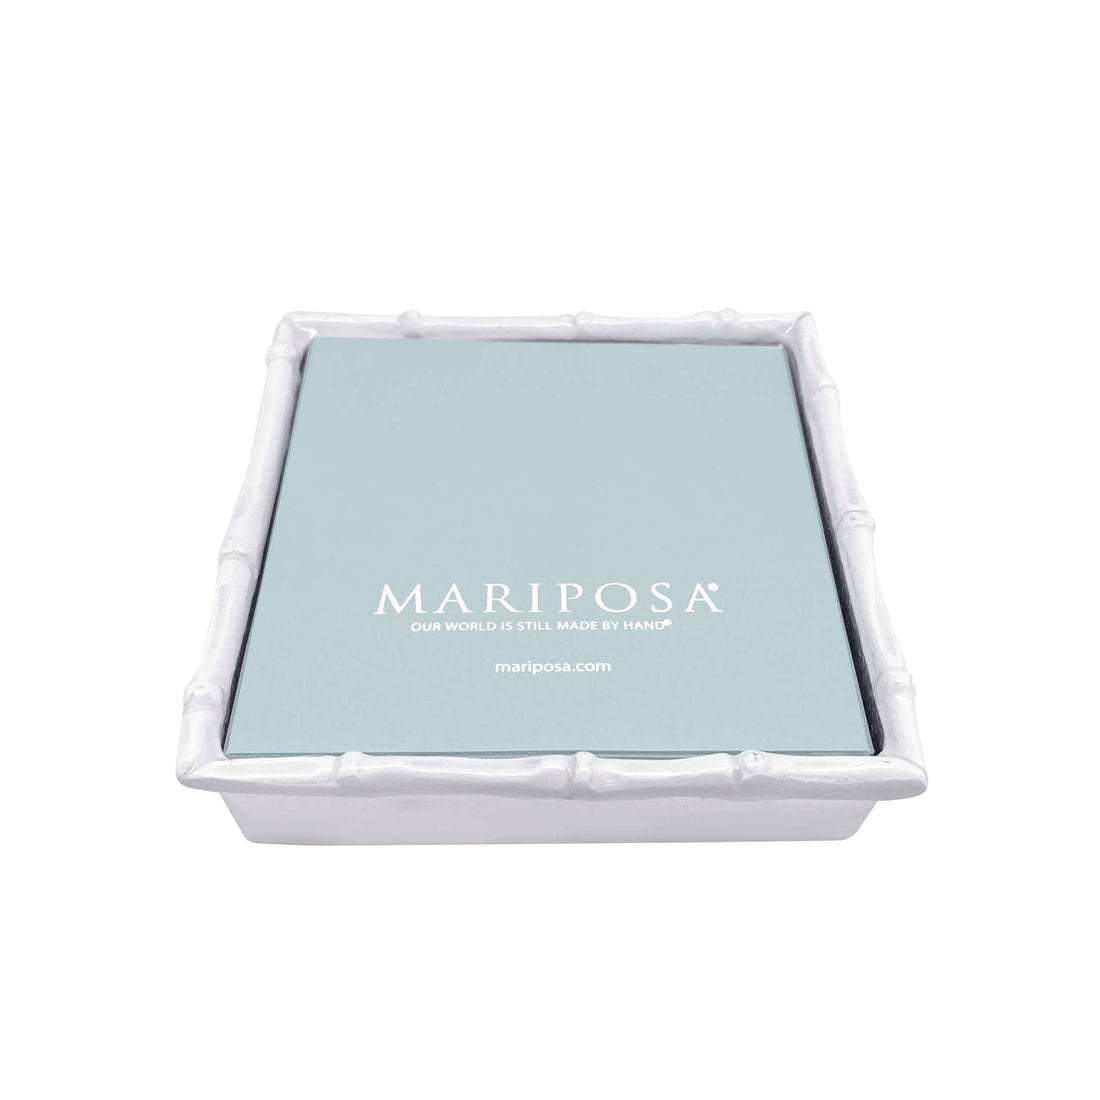 Mariposa Bamboo White Napkin Box with Insert